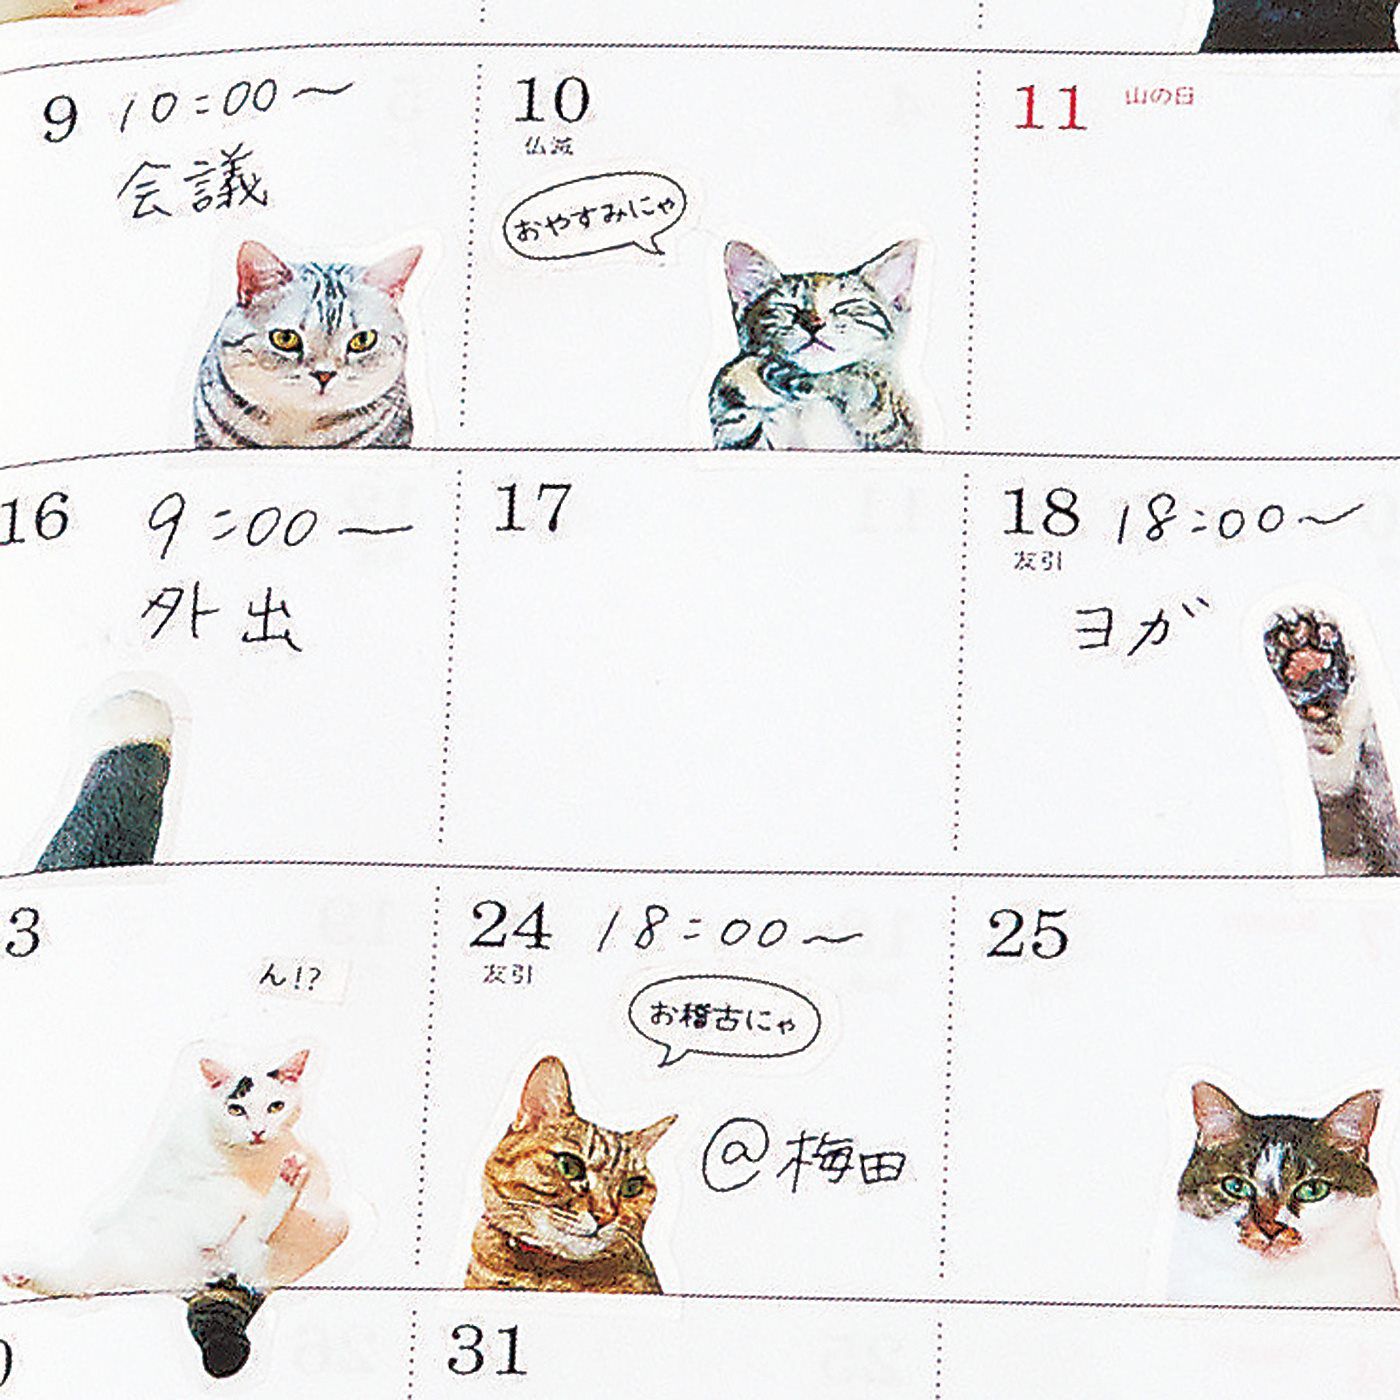 Real Stock|「猫部トーク」の猫さんたちとつくった手帳であそぶ猫シール|イベントシールとデコレーションシールは透明タイプ。